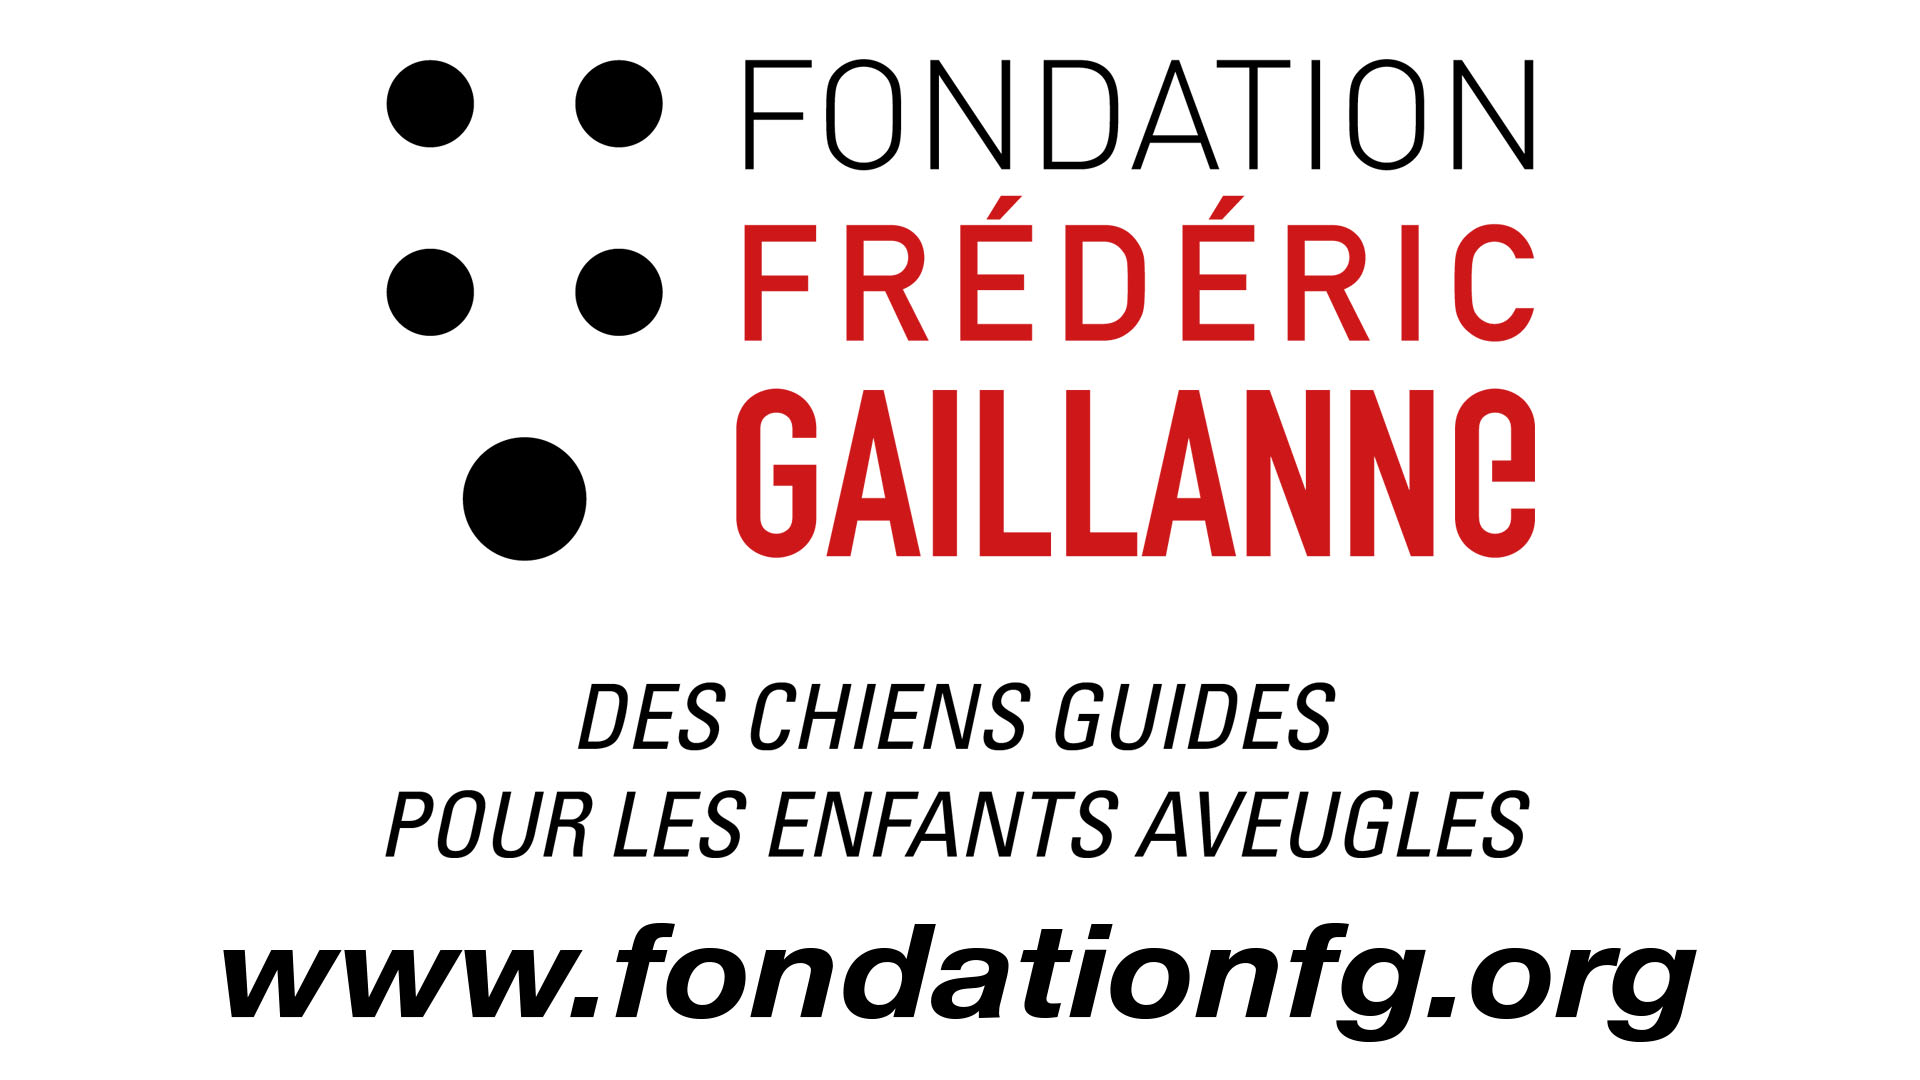 Notre soutien à la fondation Gaillanne dans la presse: